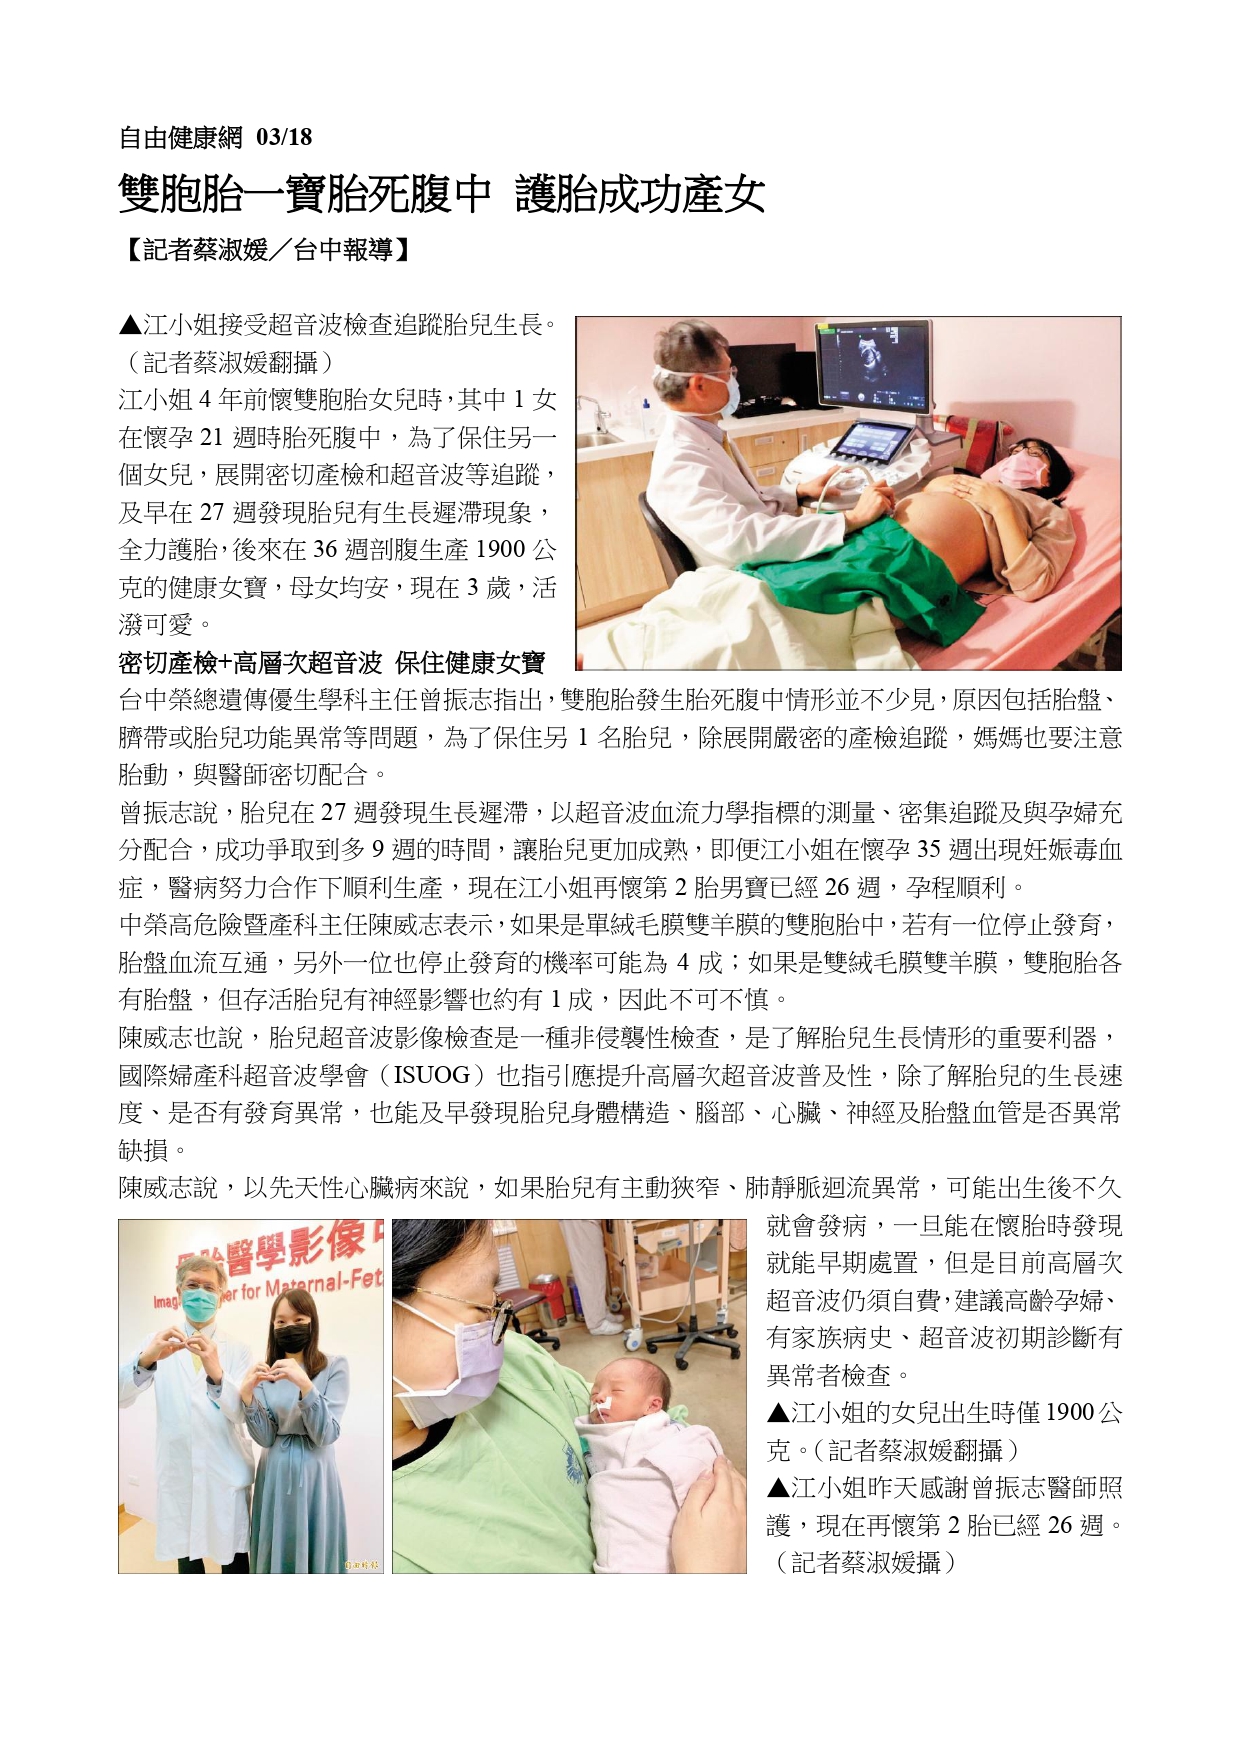 臺中榮民總醫院建置 母胎醫學影像中心